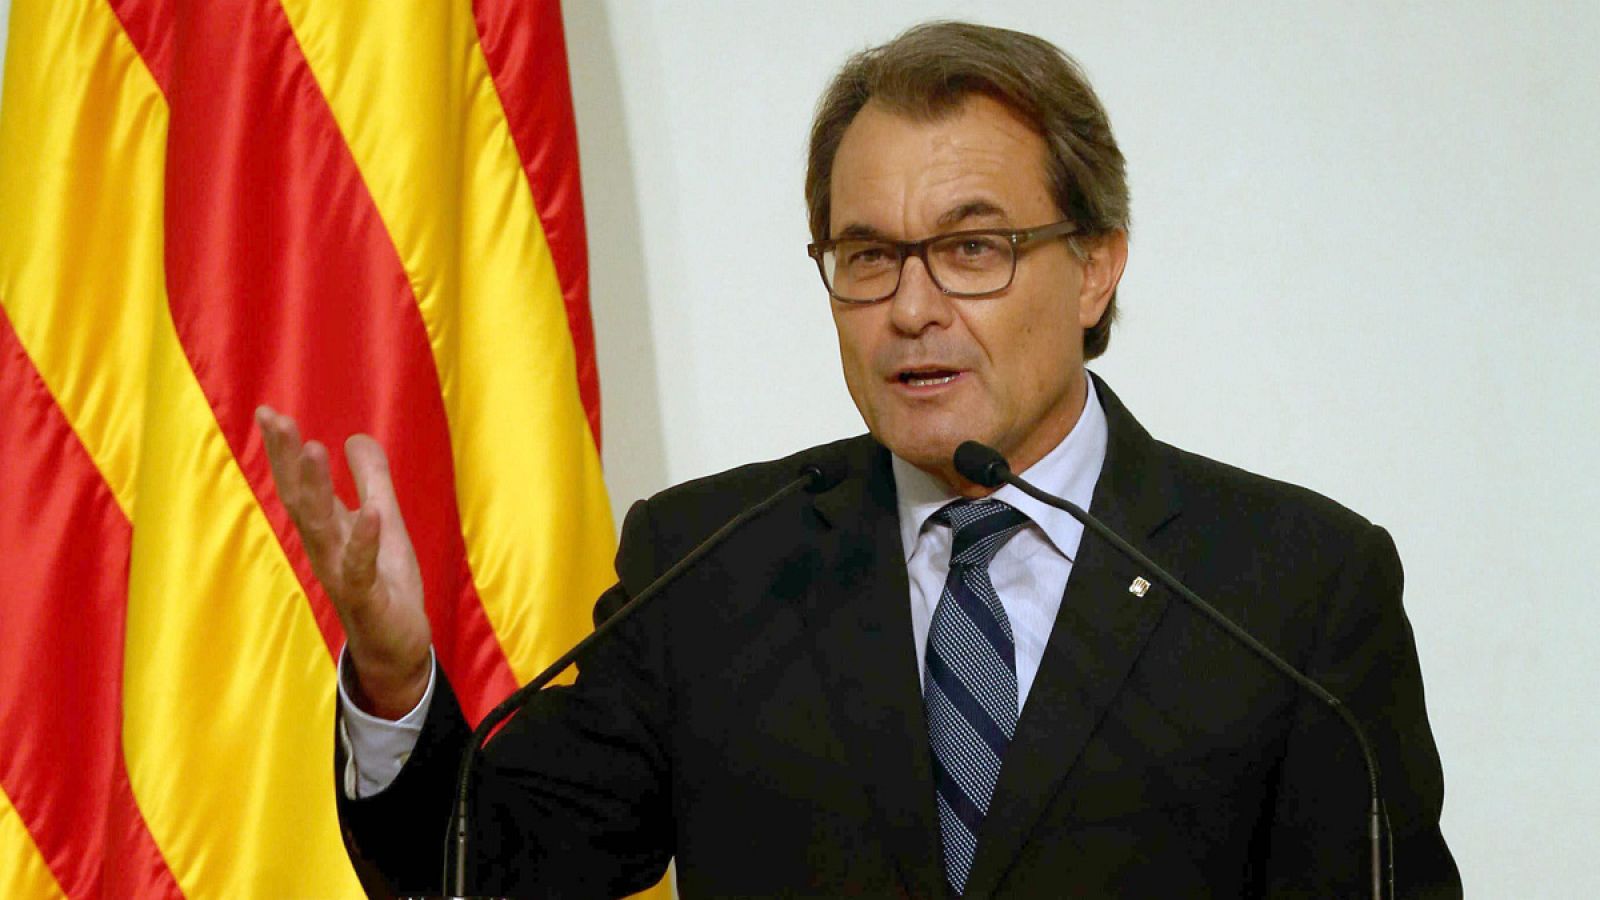 El presidente de la Generalitat, Artur Mas, durante su intervención en la ceremonia de entrega de las medallas de oro de la cámara catalana